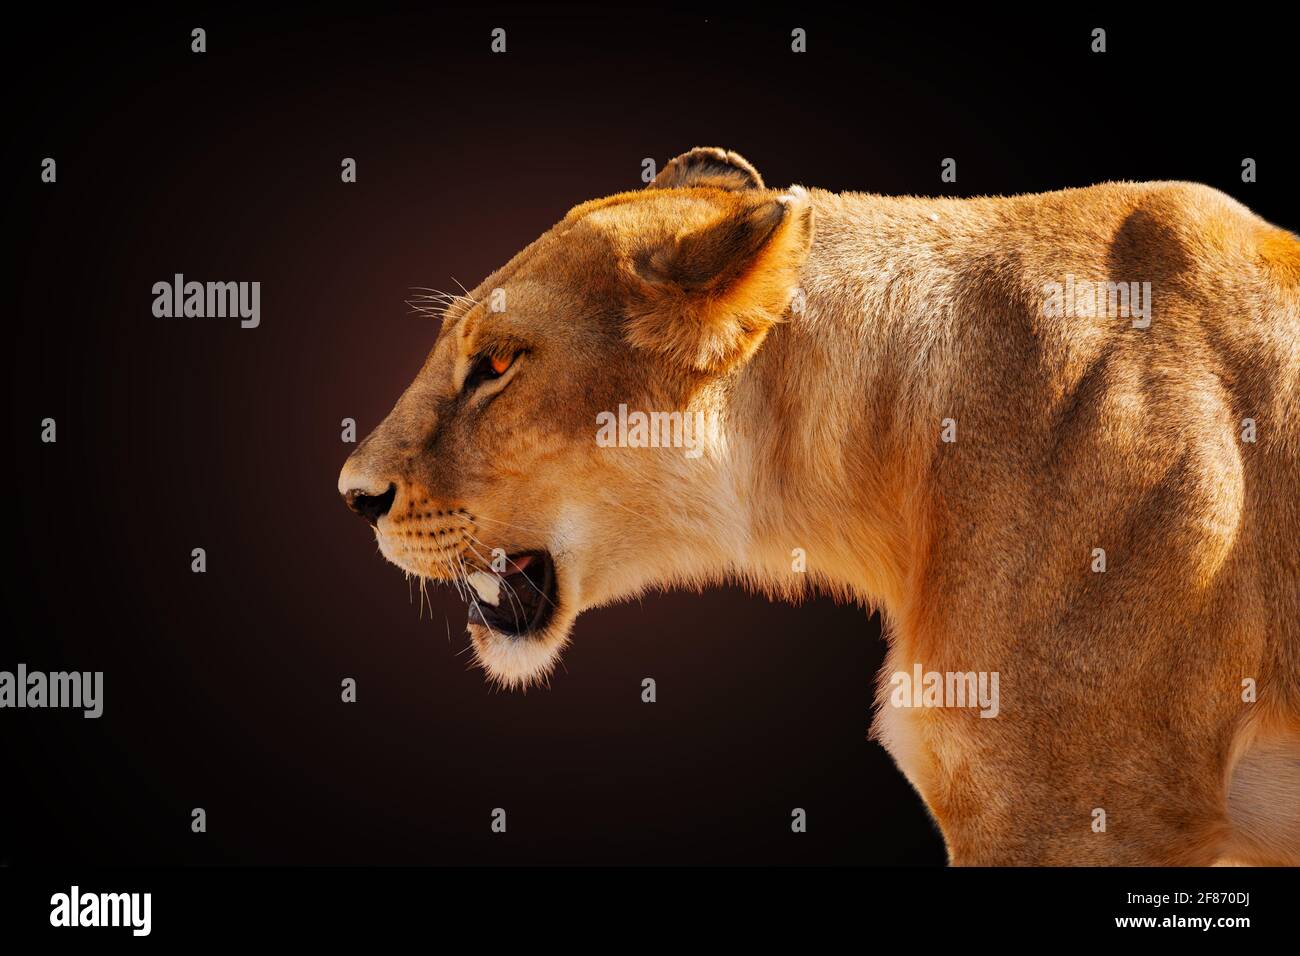 Immagine di profilo del leone femminile arrabbiato su scuro Foto Stock